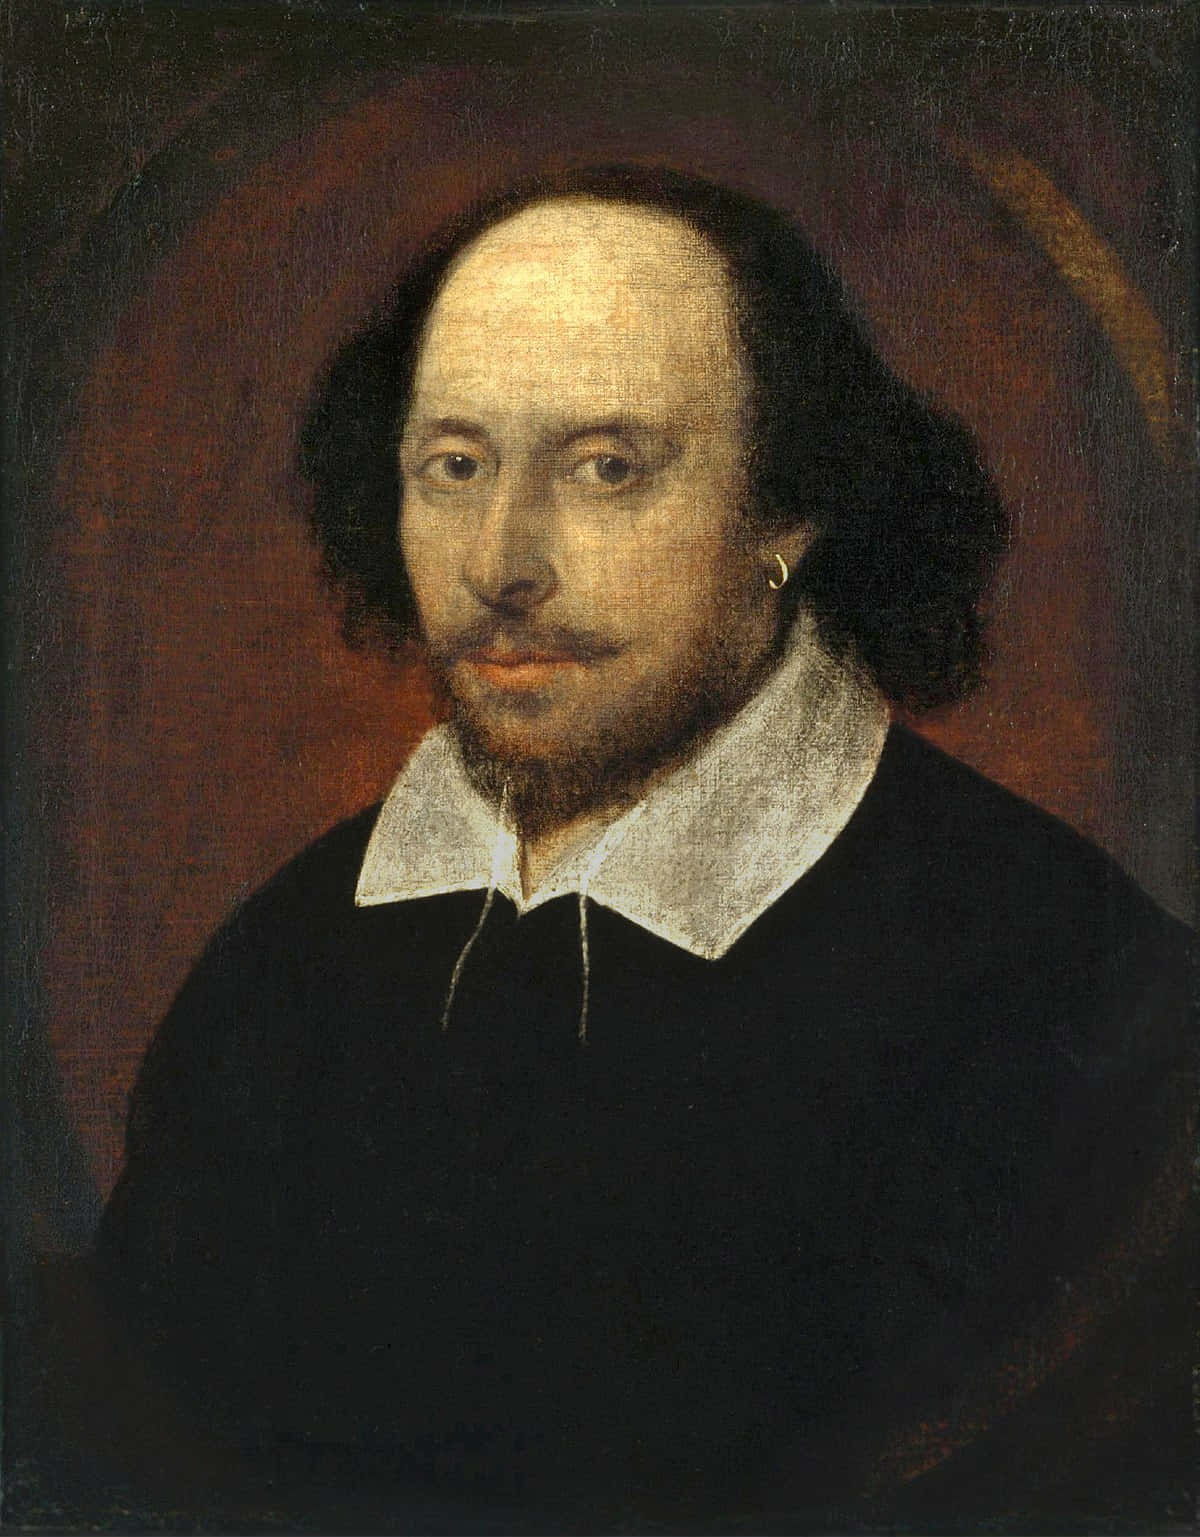 Fotografiade Retrato De William Shakespeare.